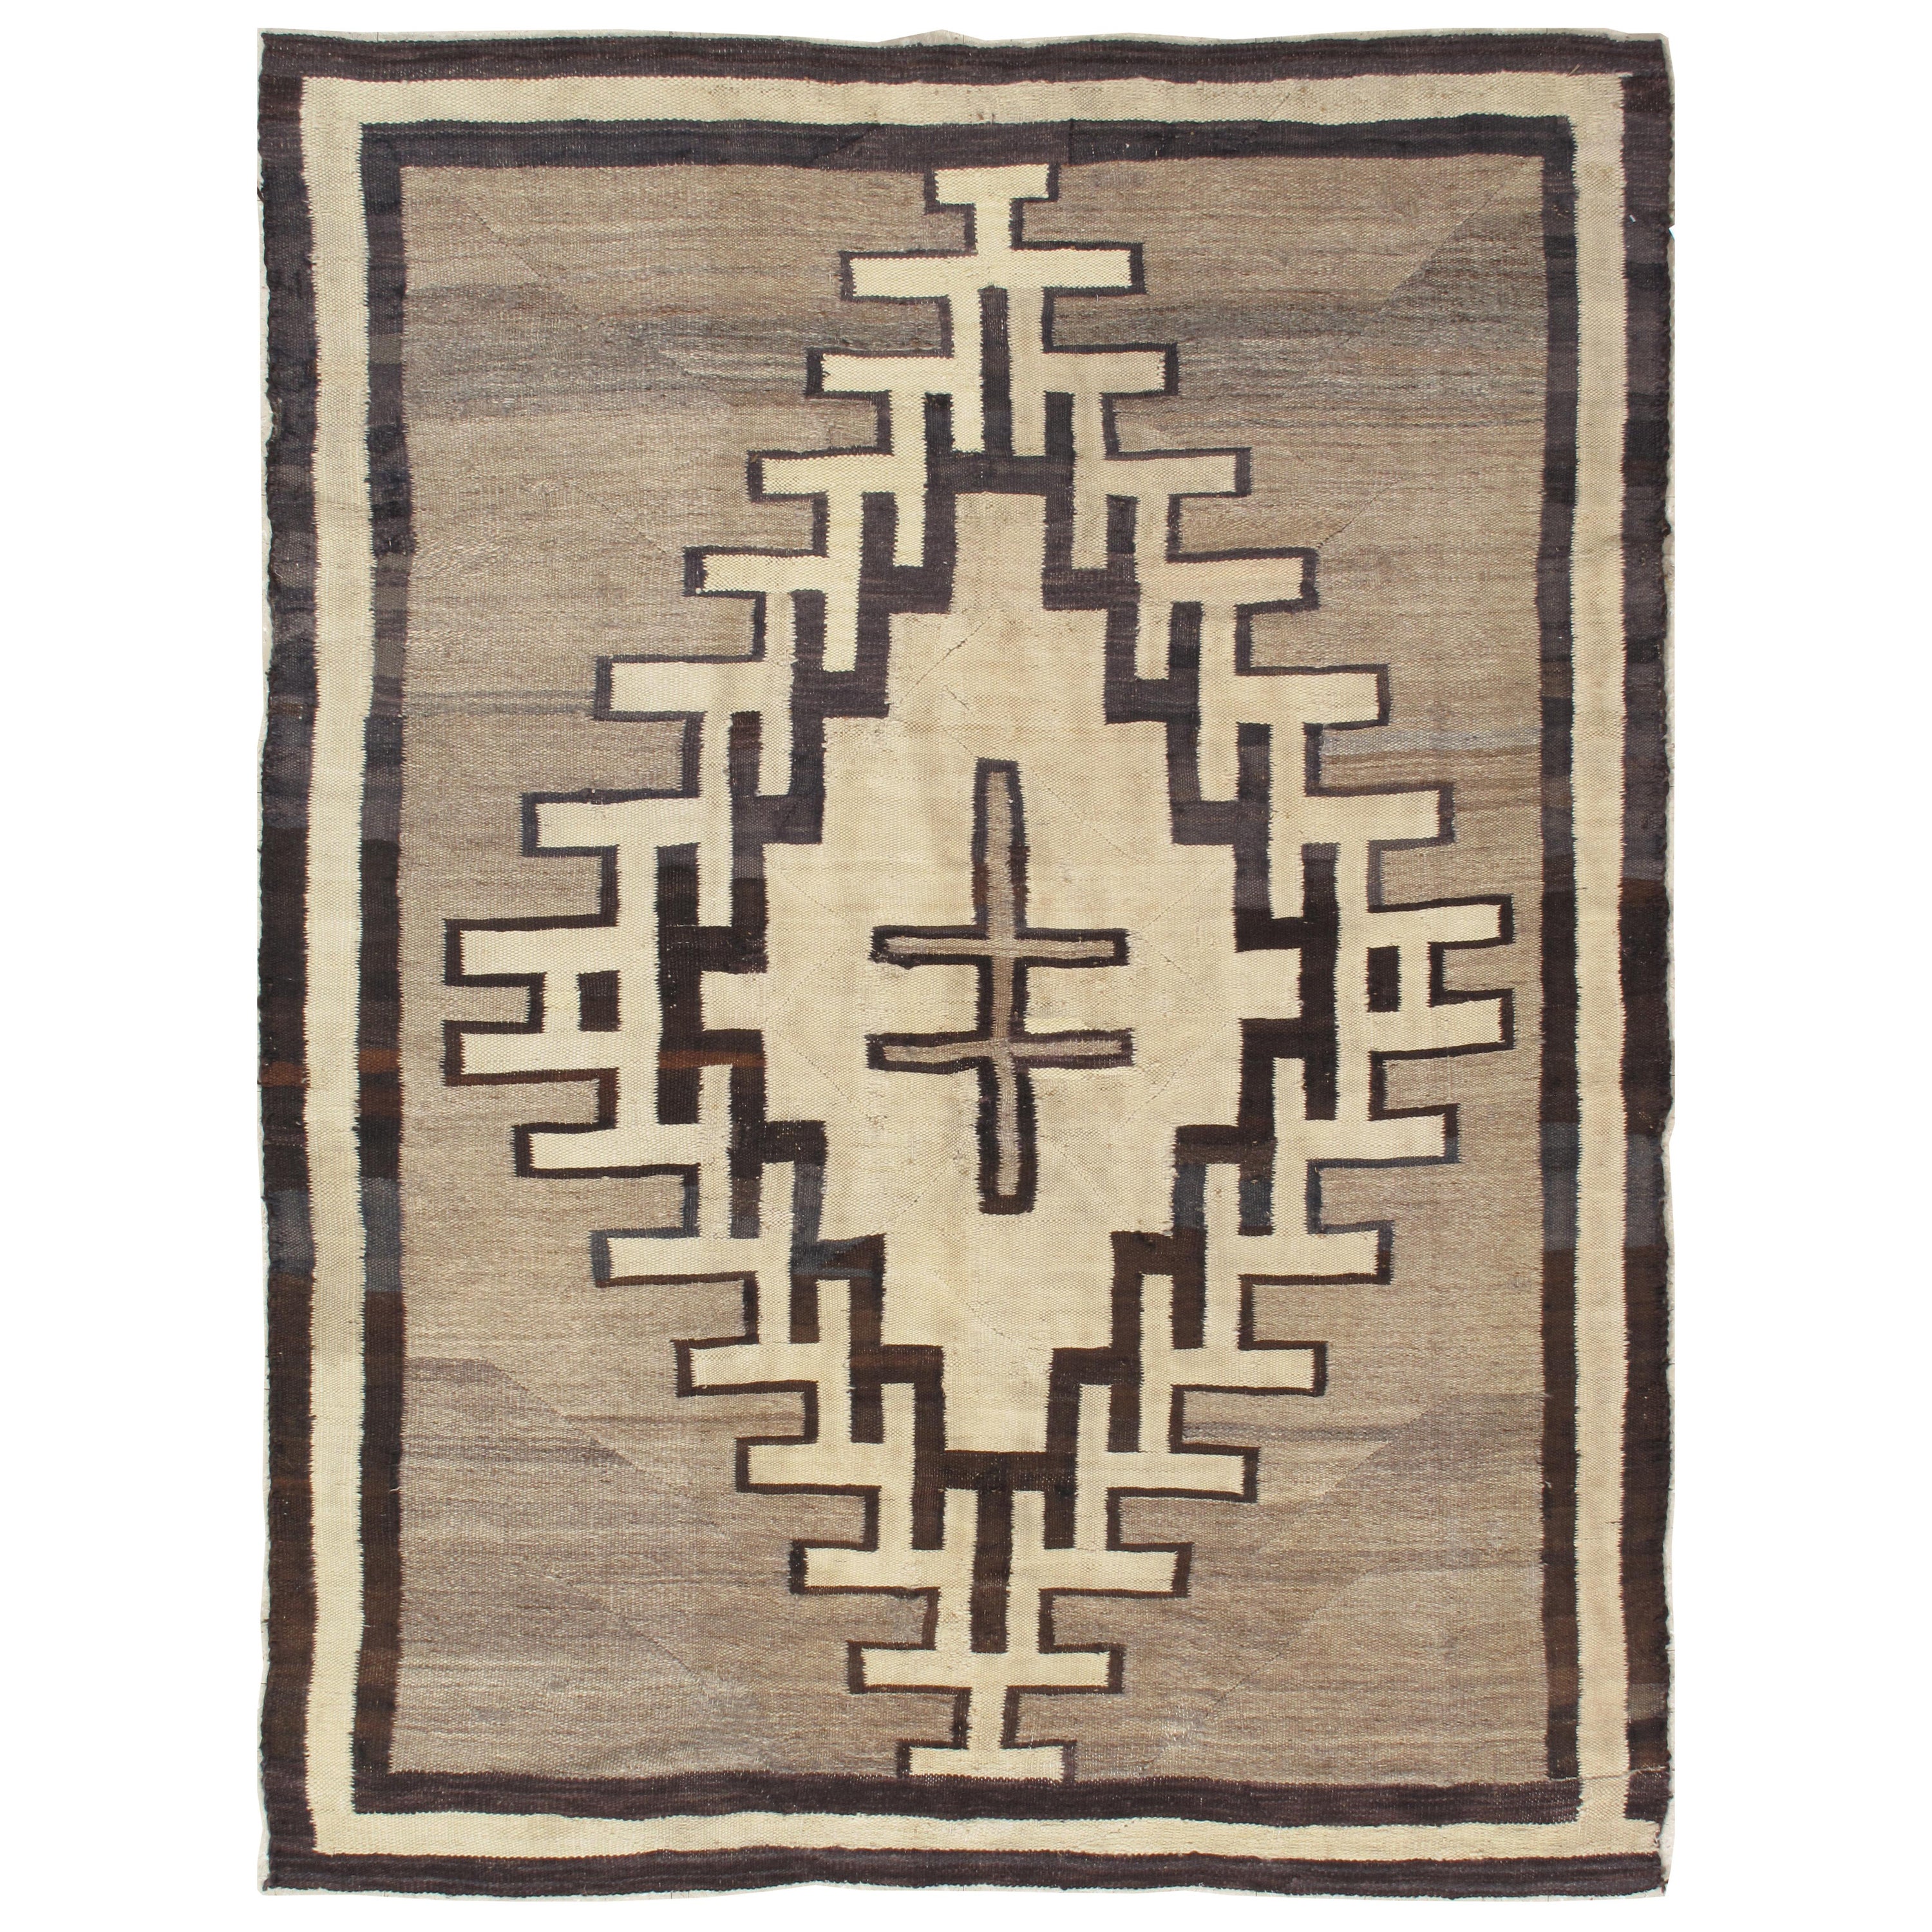 Tapis Navajo ancien, laine faite à la main, couleurs neutres, ivoire, beige, gris et brun